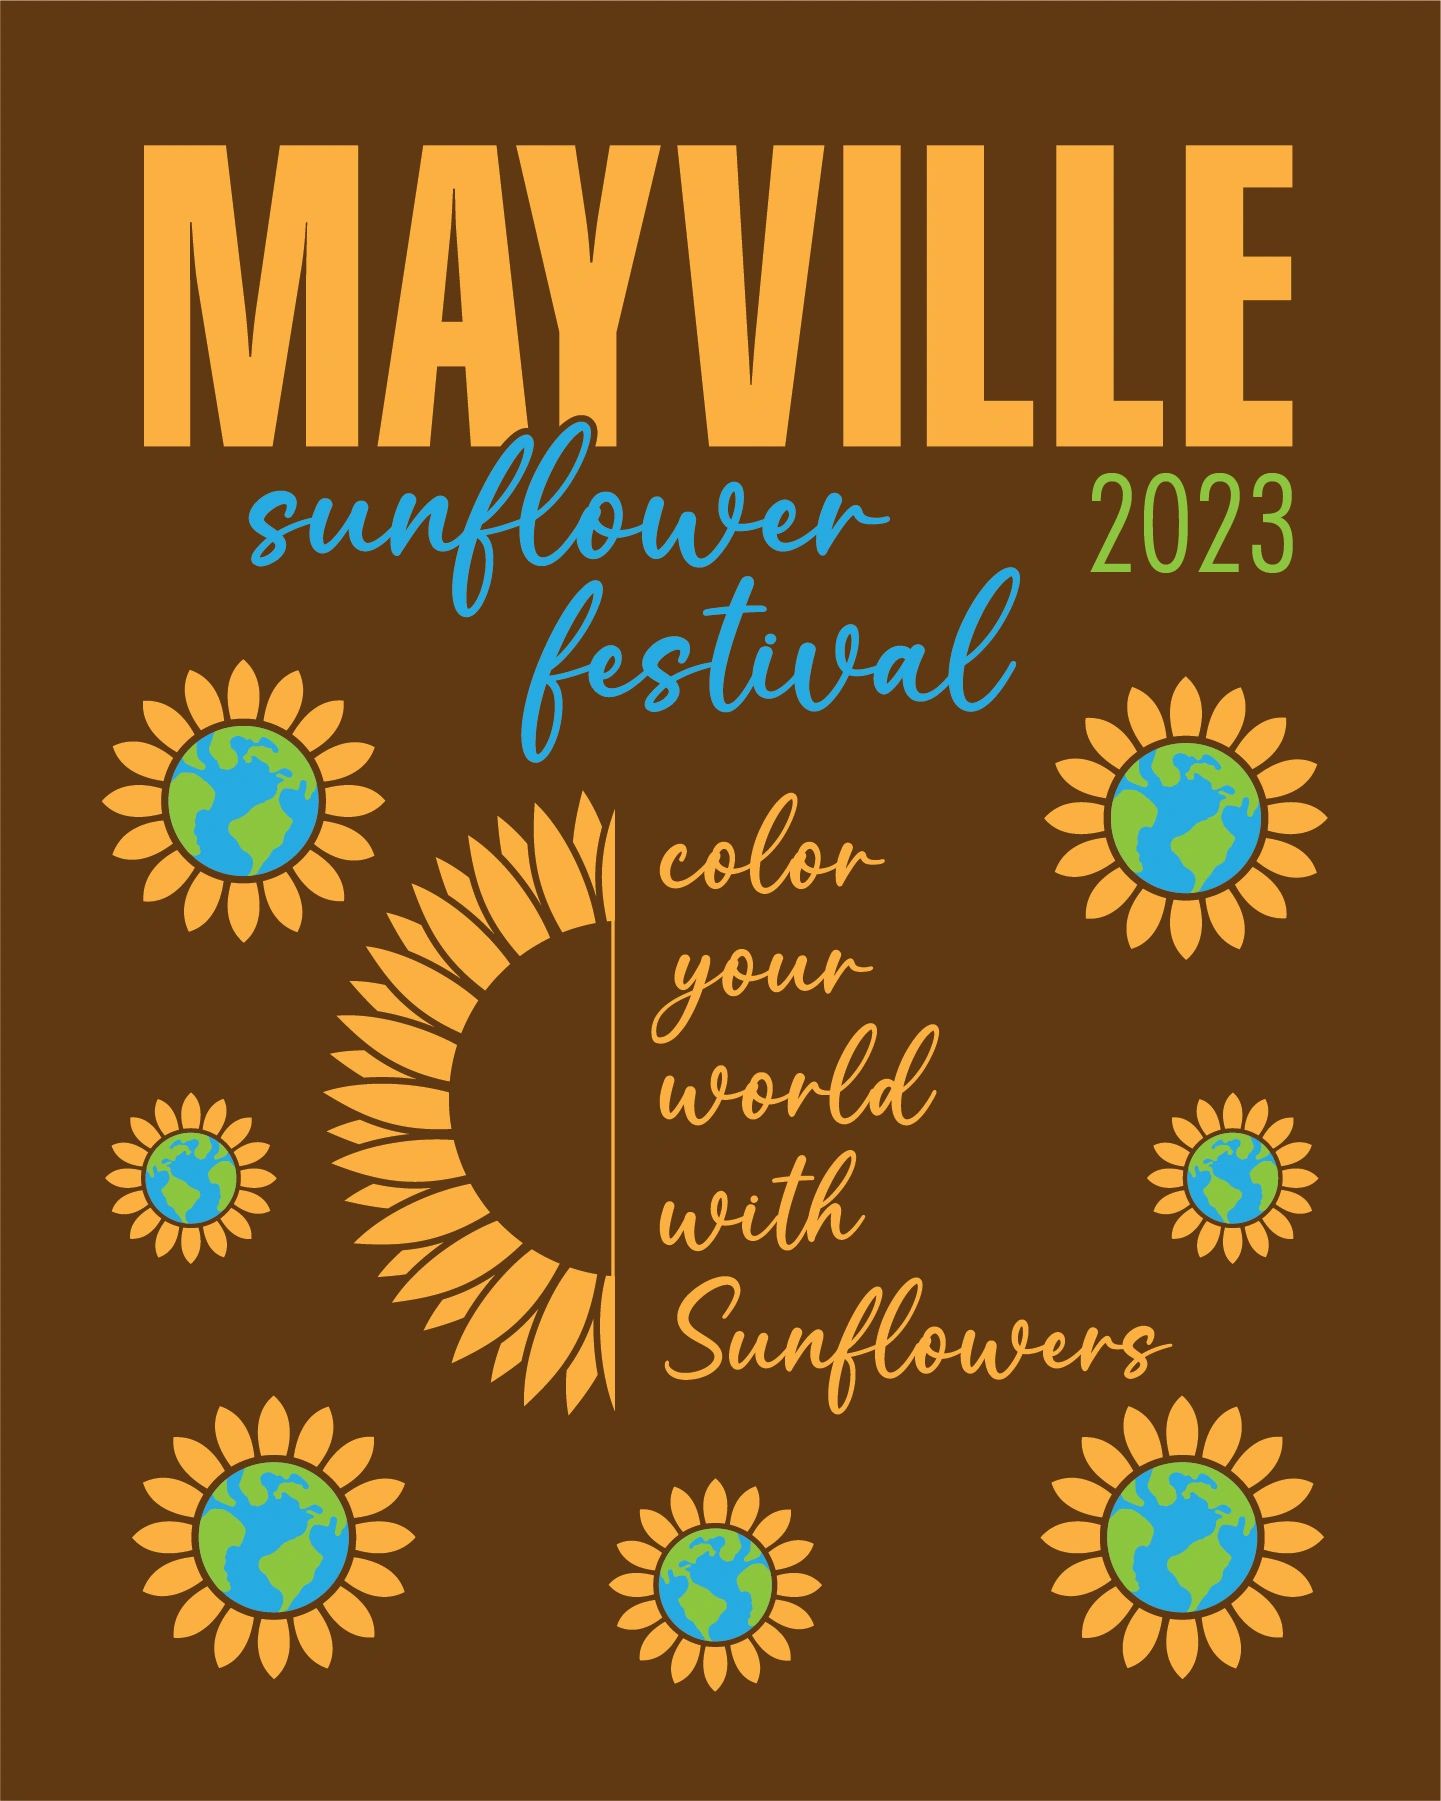 Mayville Sunflower Festival Festival, Events